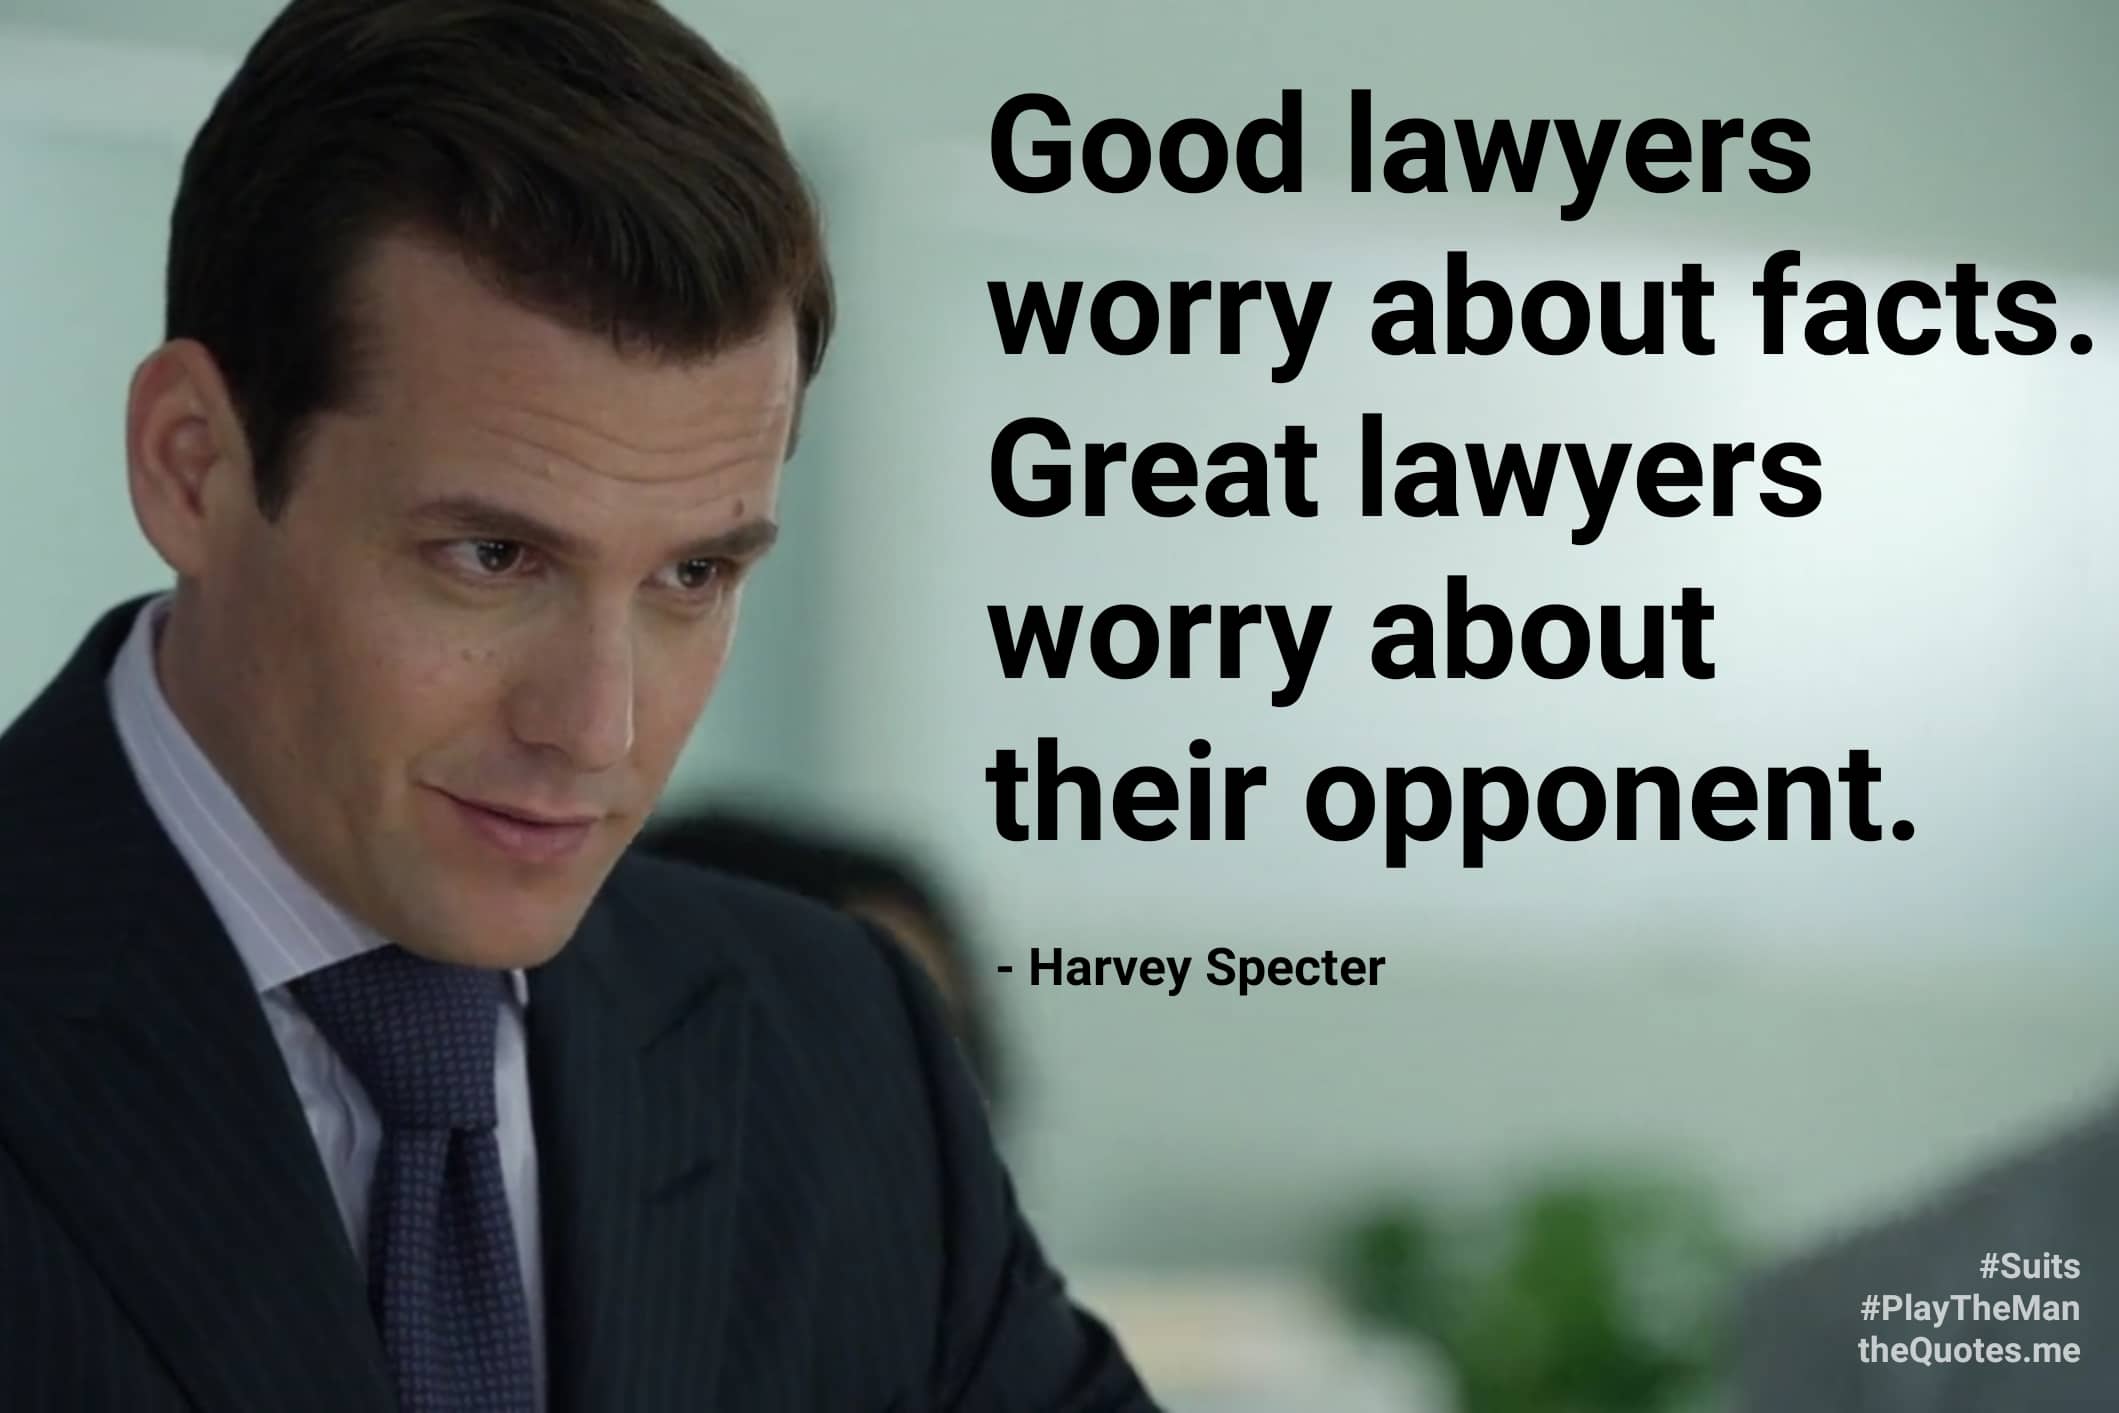 Lawyers’ worry